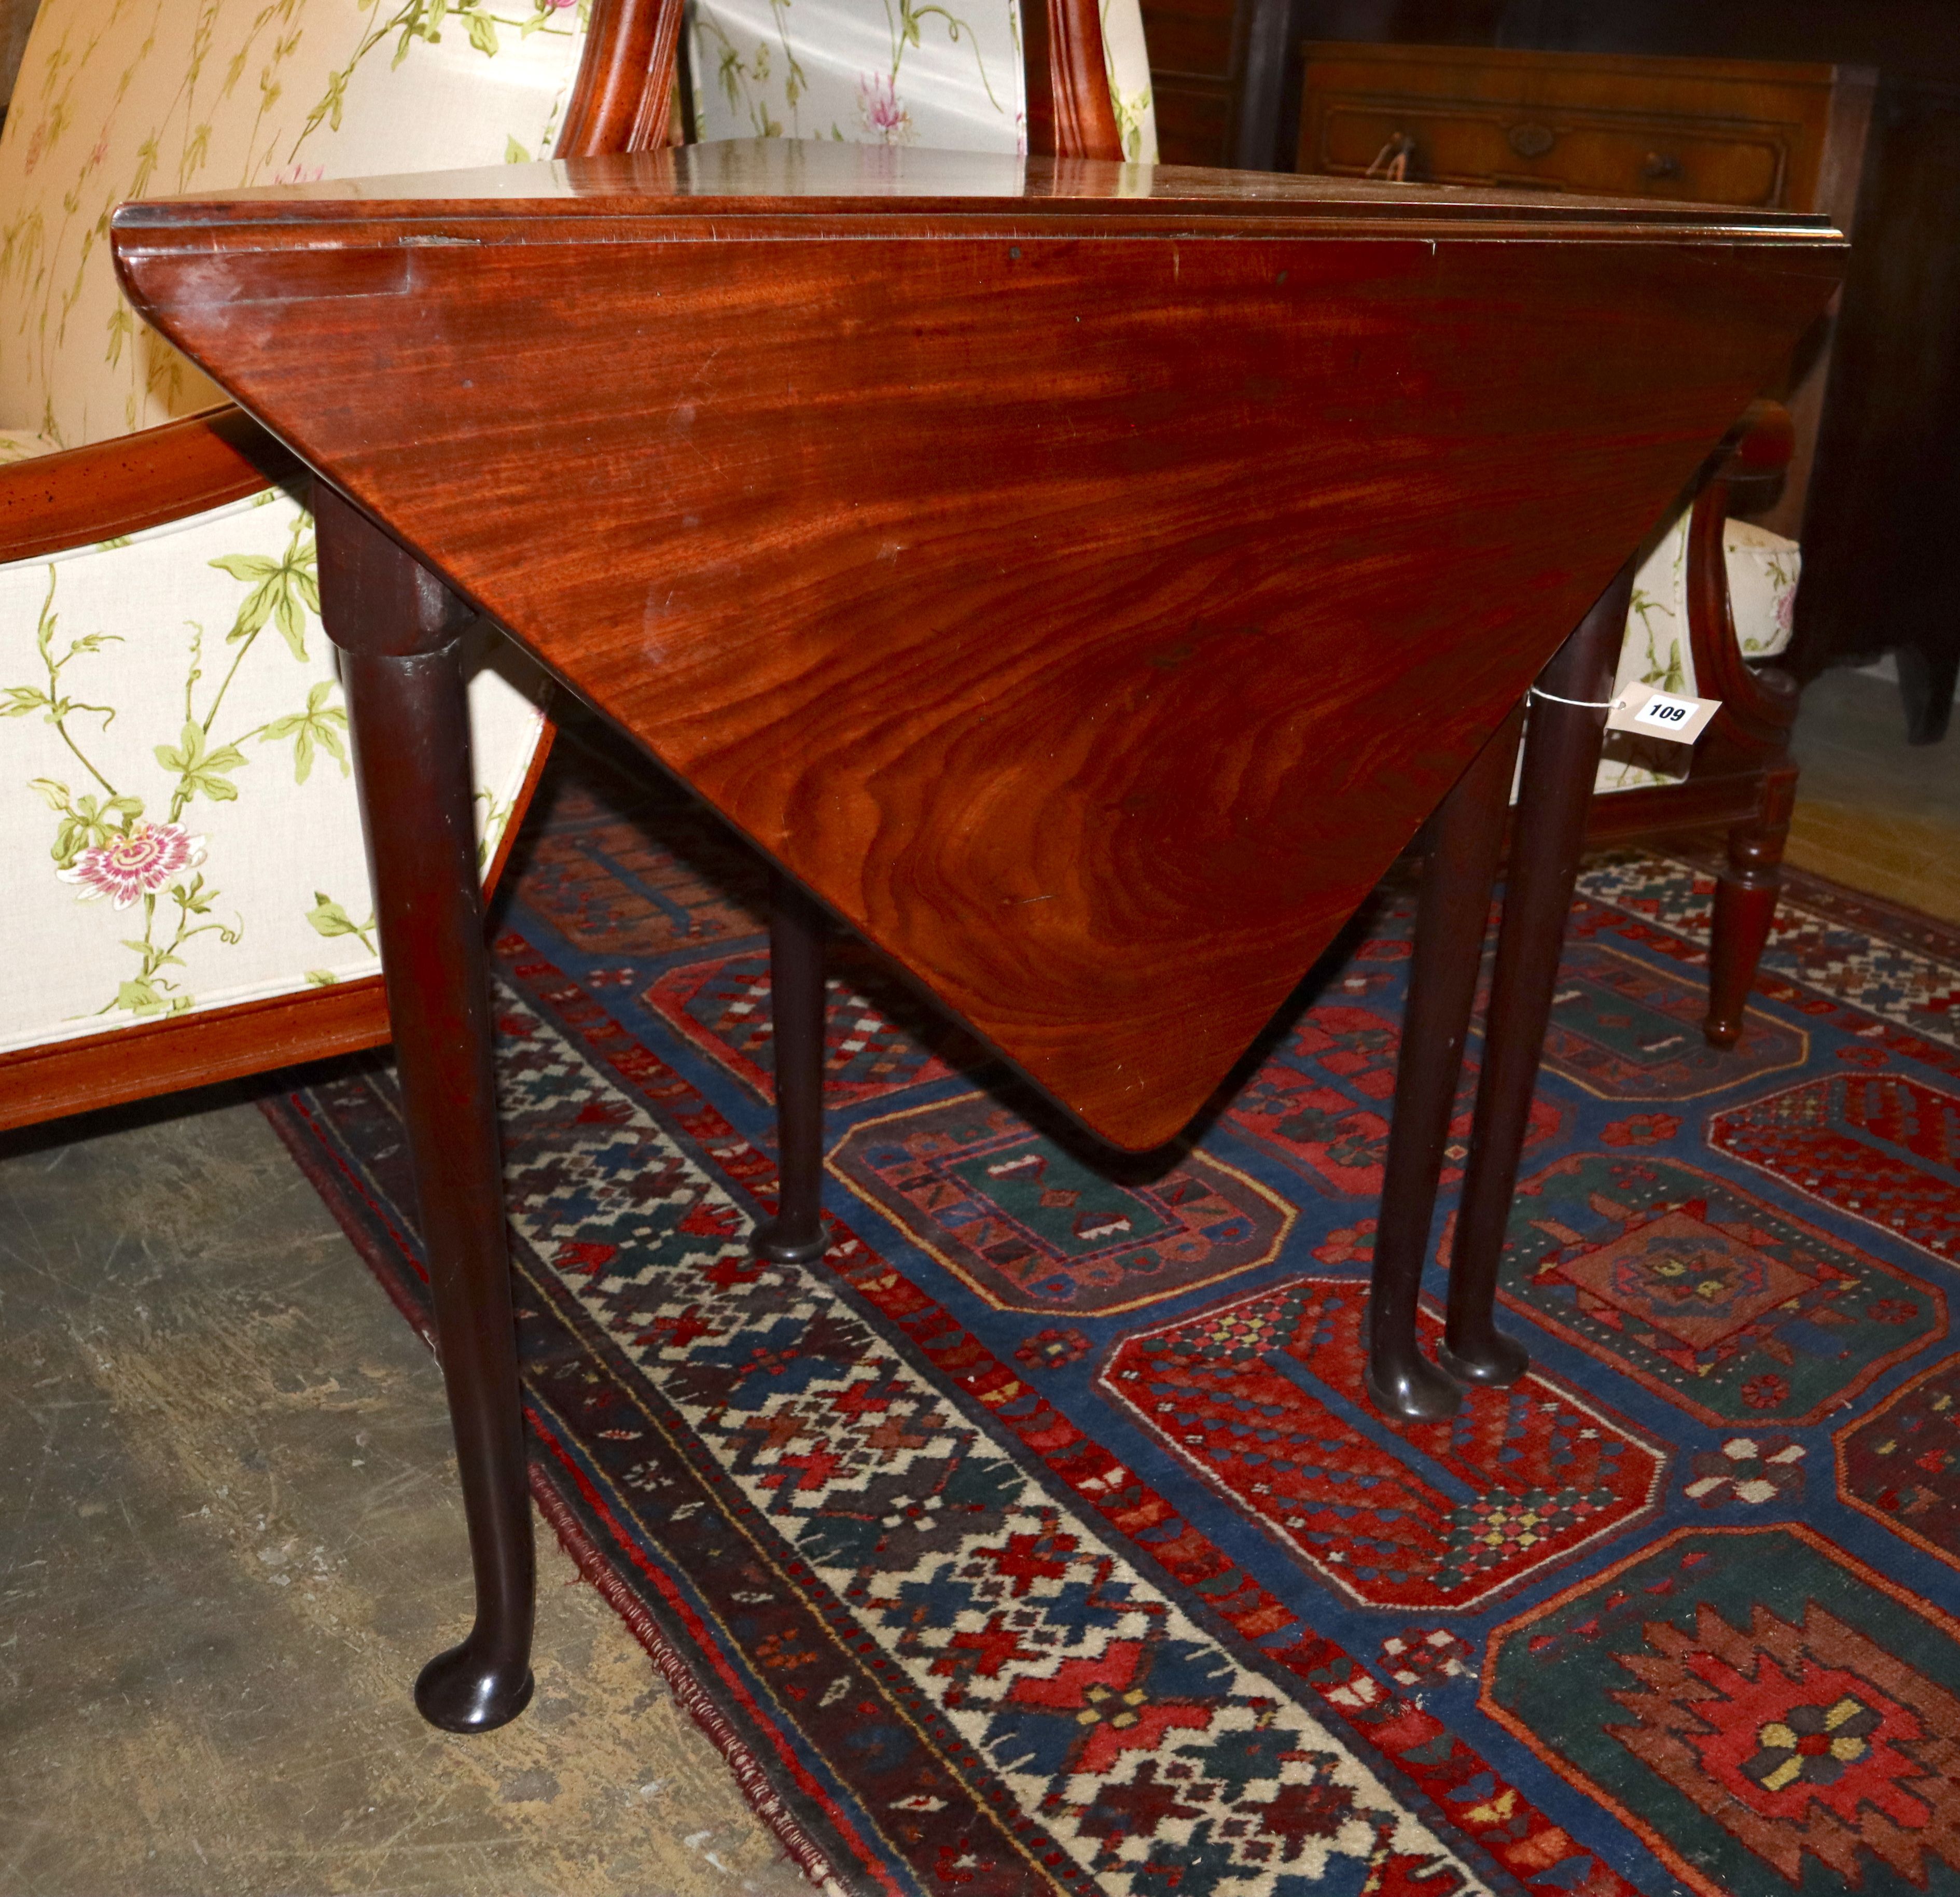 A George III mahogany triangular drop-leaf table, width 89cm, depth 46cm, height 72cm